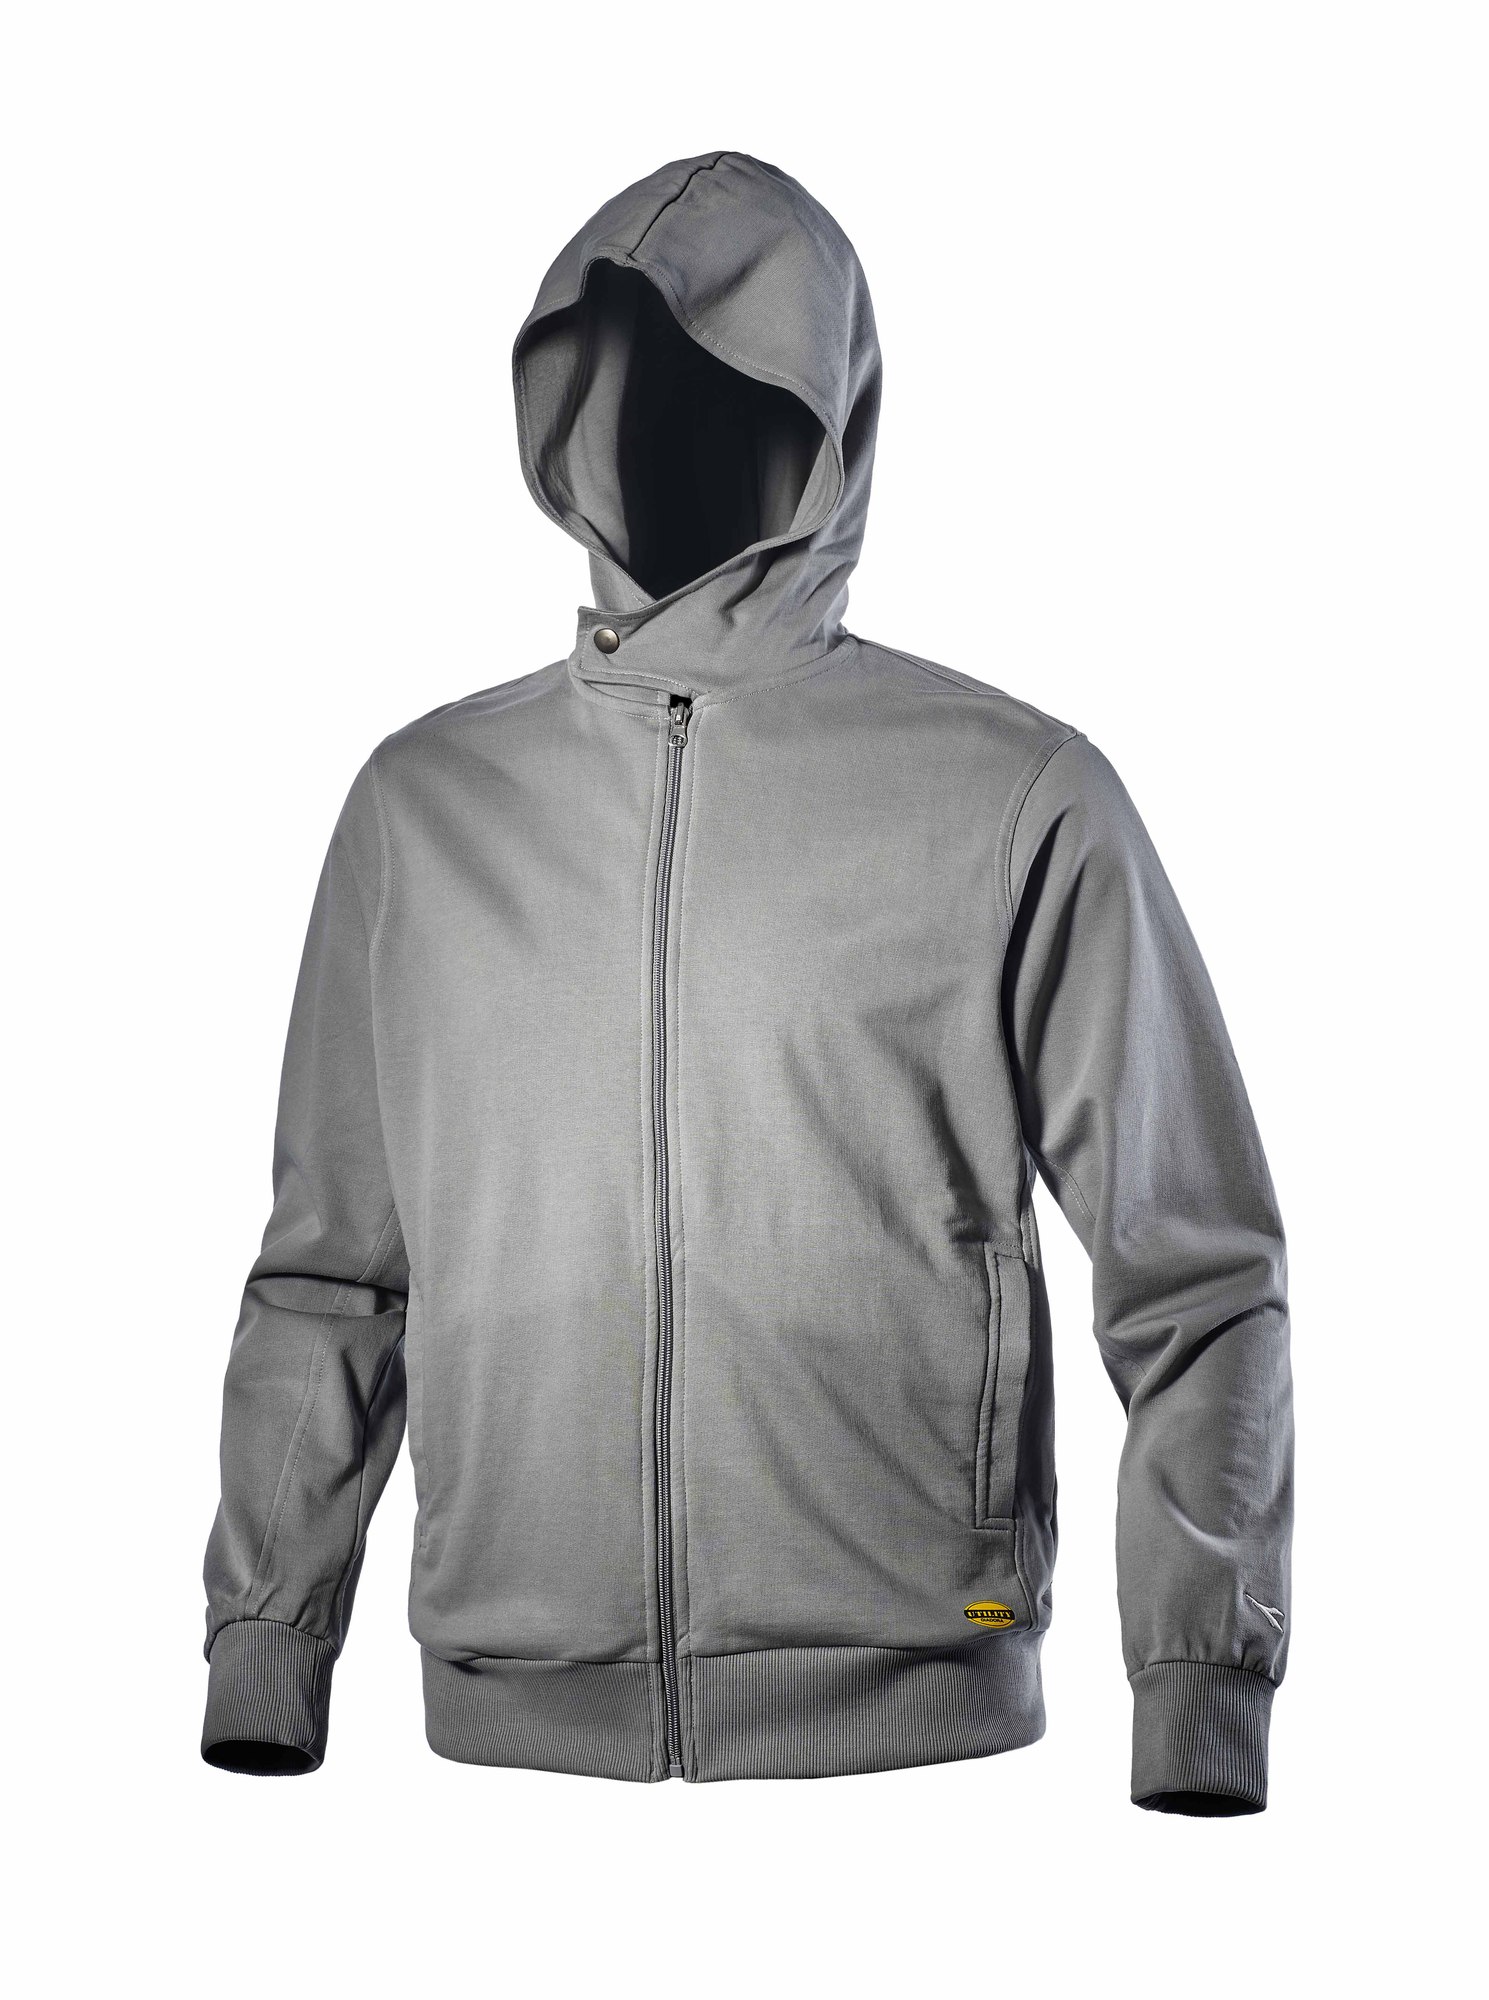 Sweatshirt THUNDER gris TL - DIADORA SPA - 702.157767.L 75070